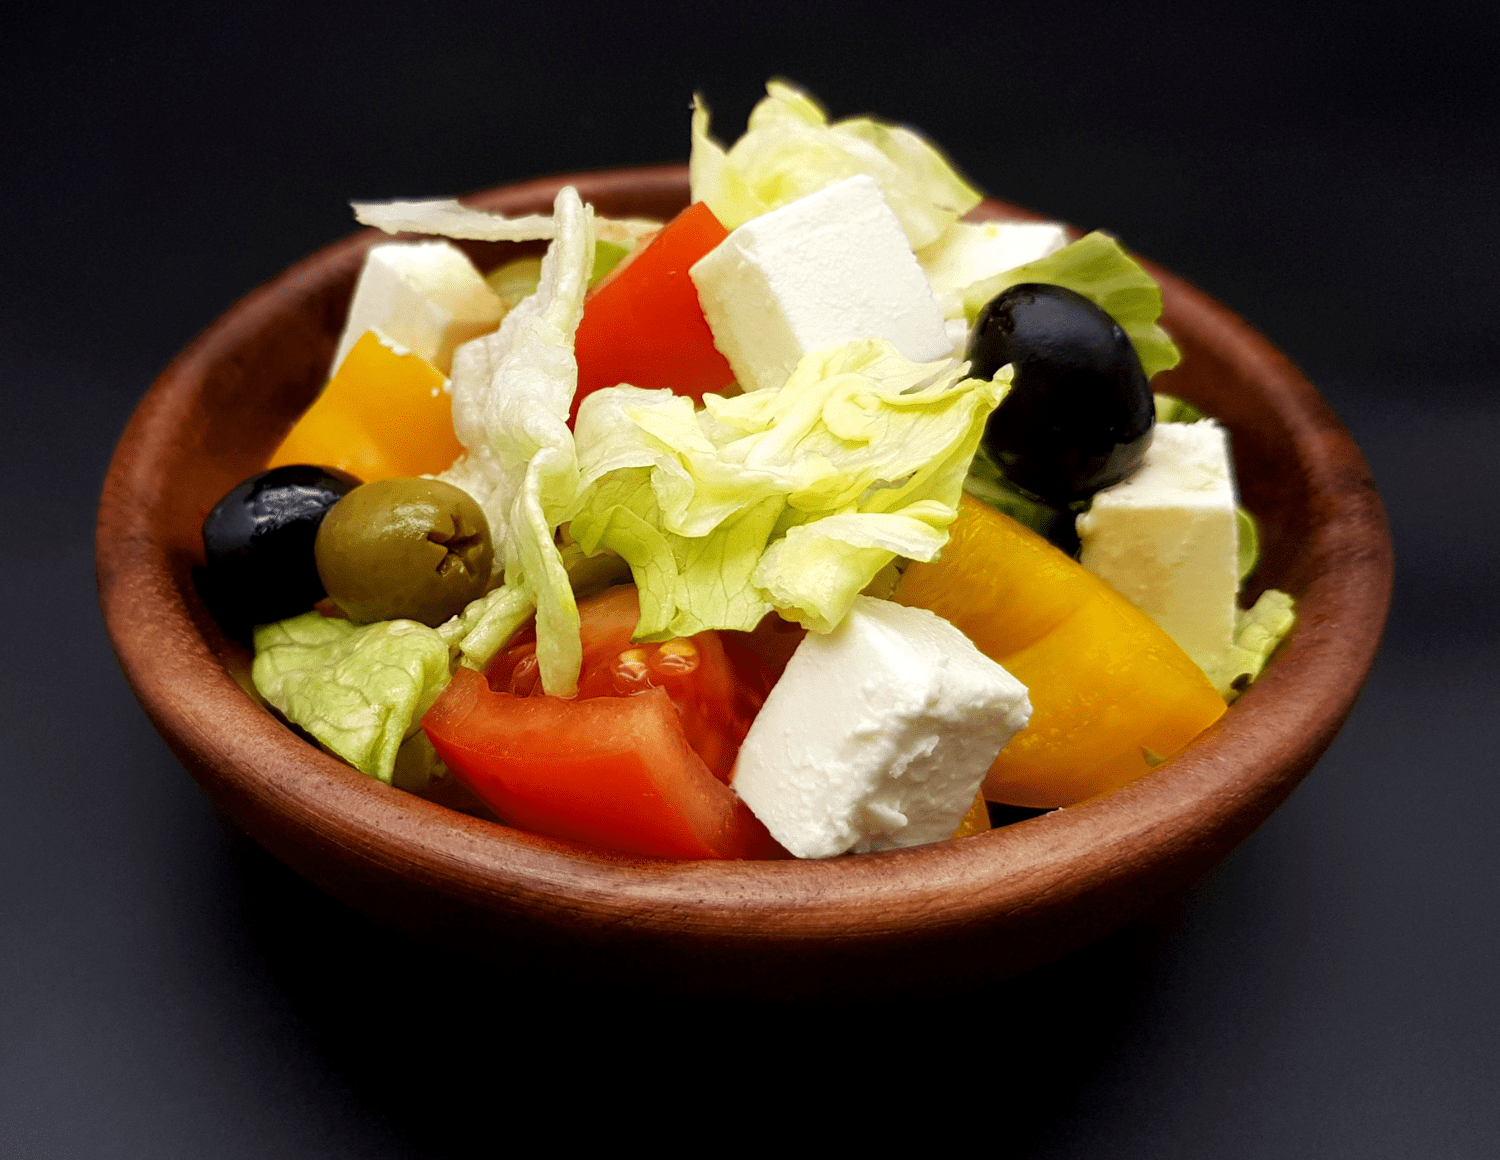 Салат греческий - 5 очень вкусных классических рецептов